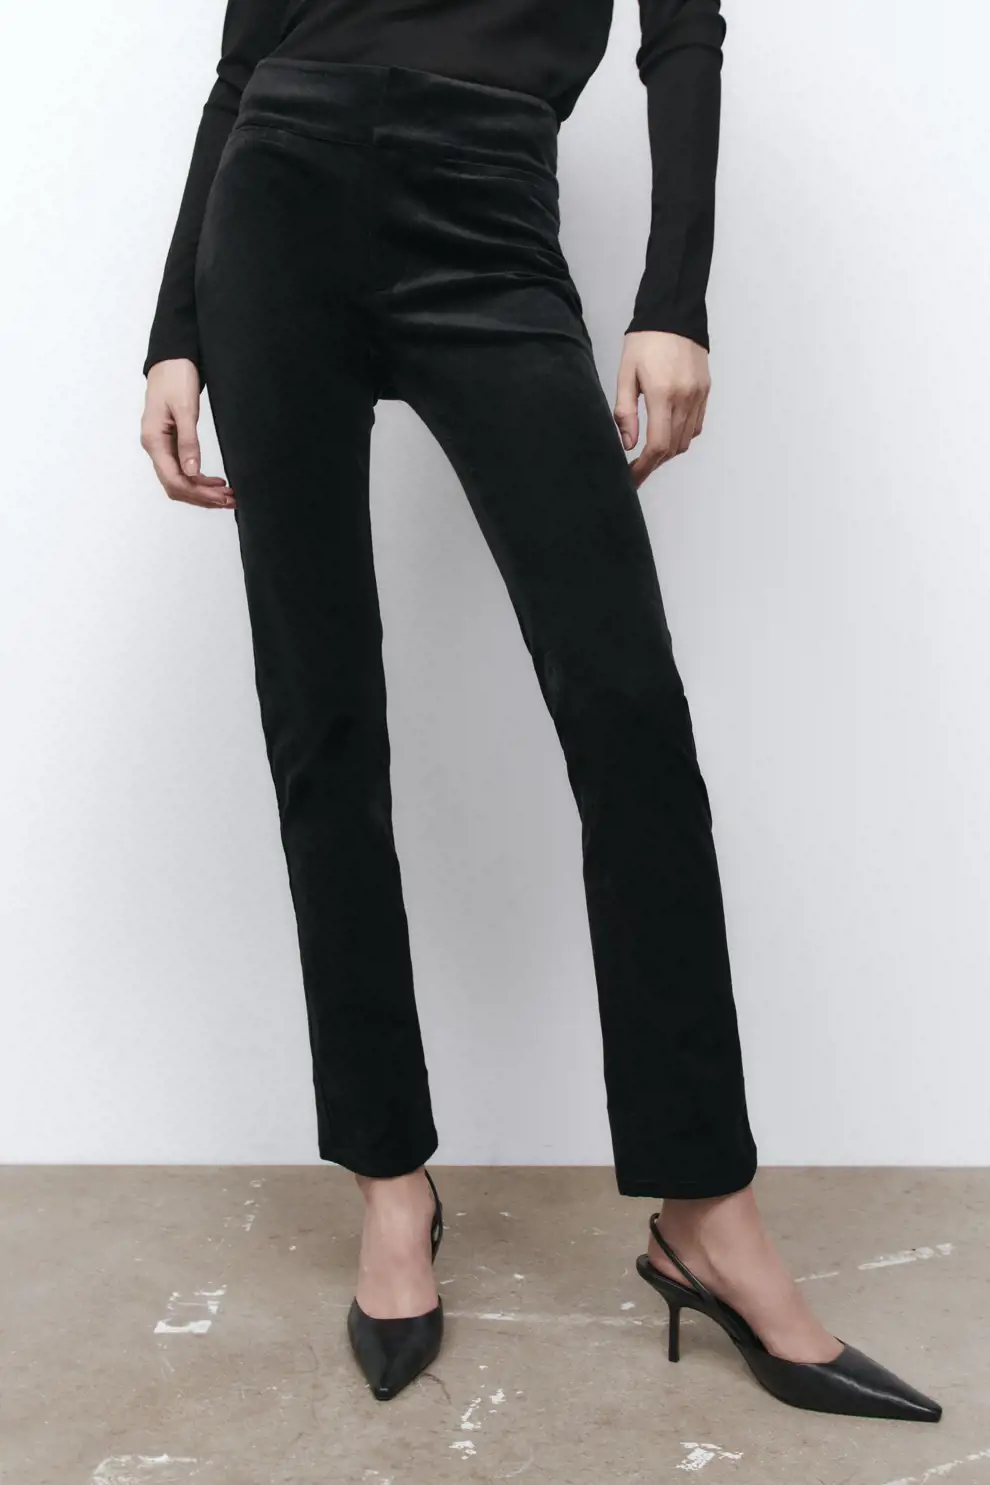 pantalones de Zara que estilizan recto slim cintura alta